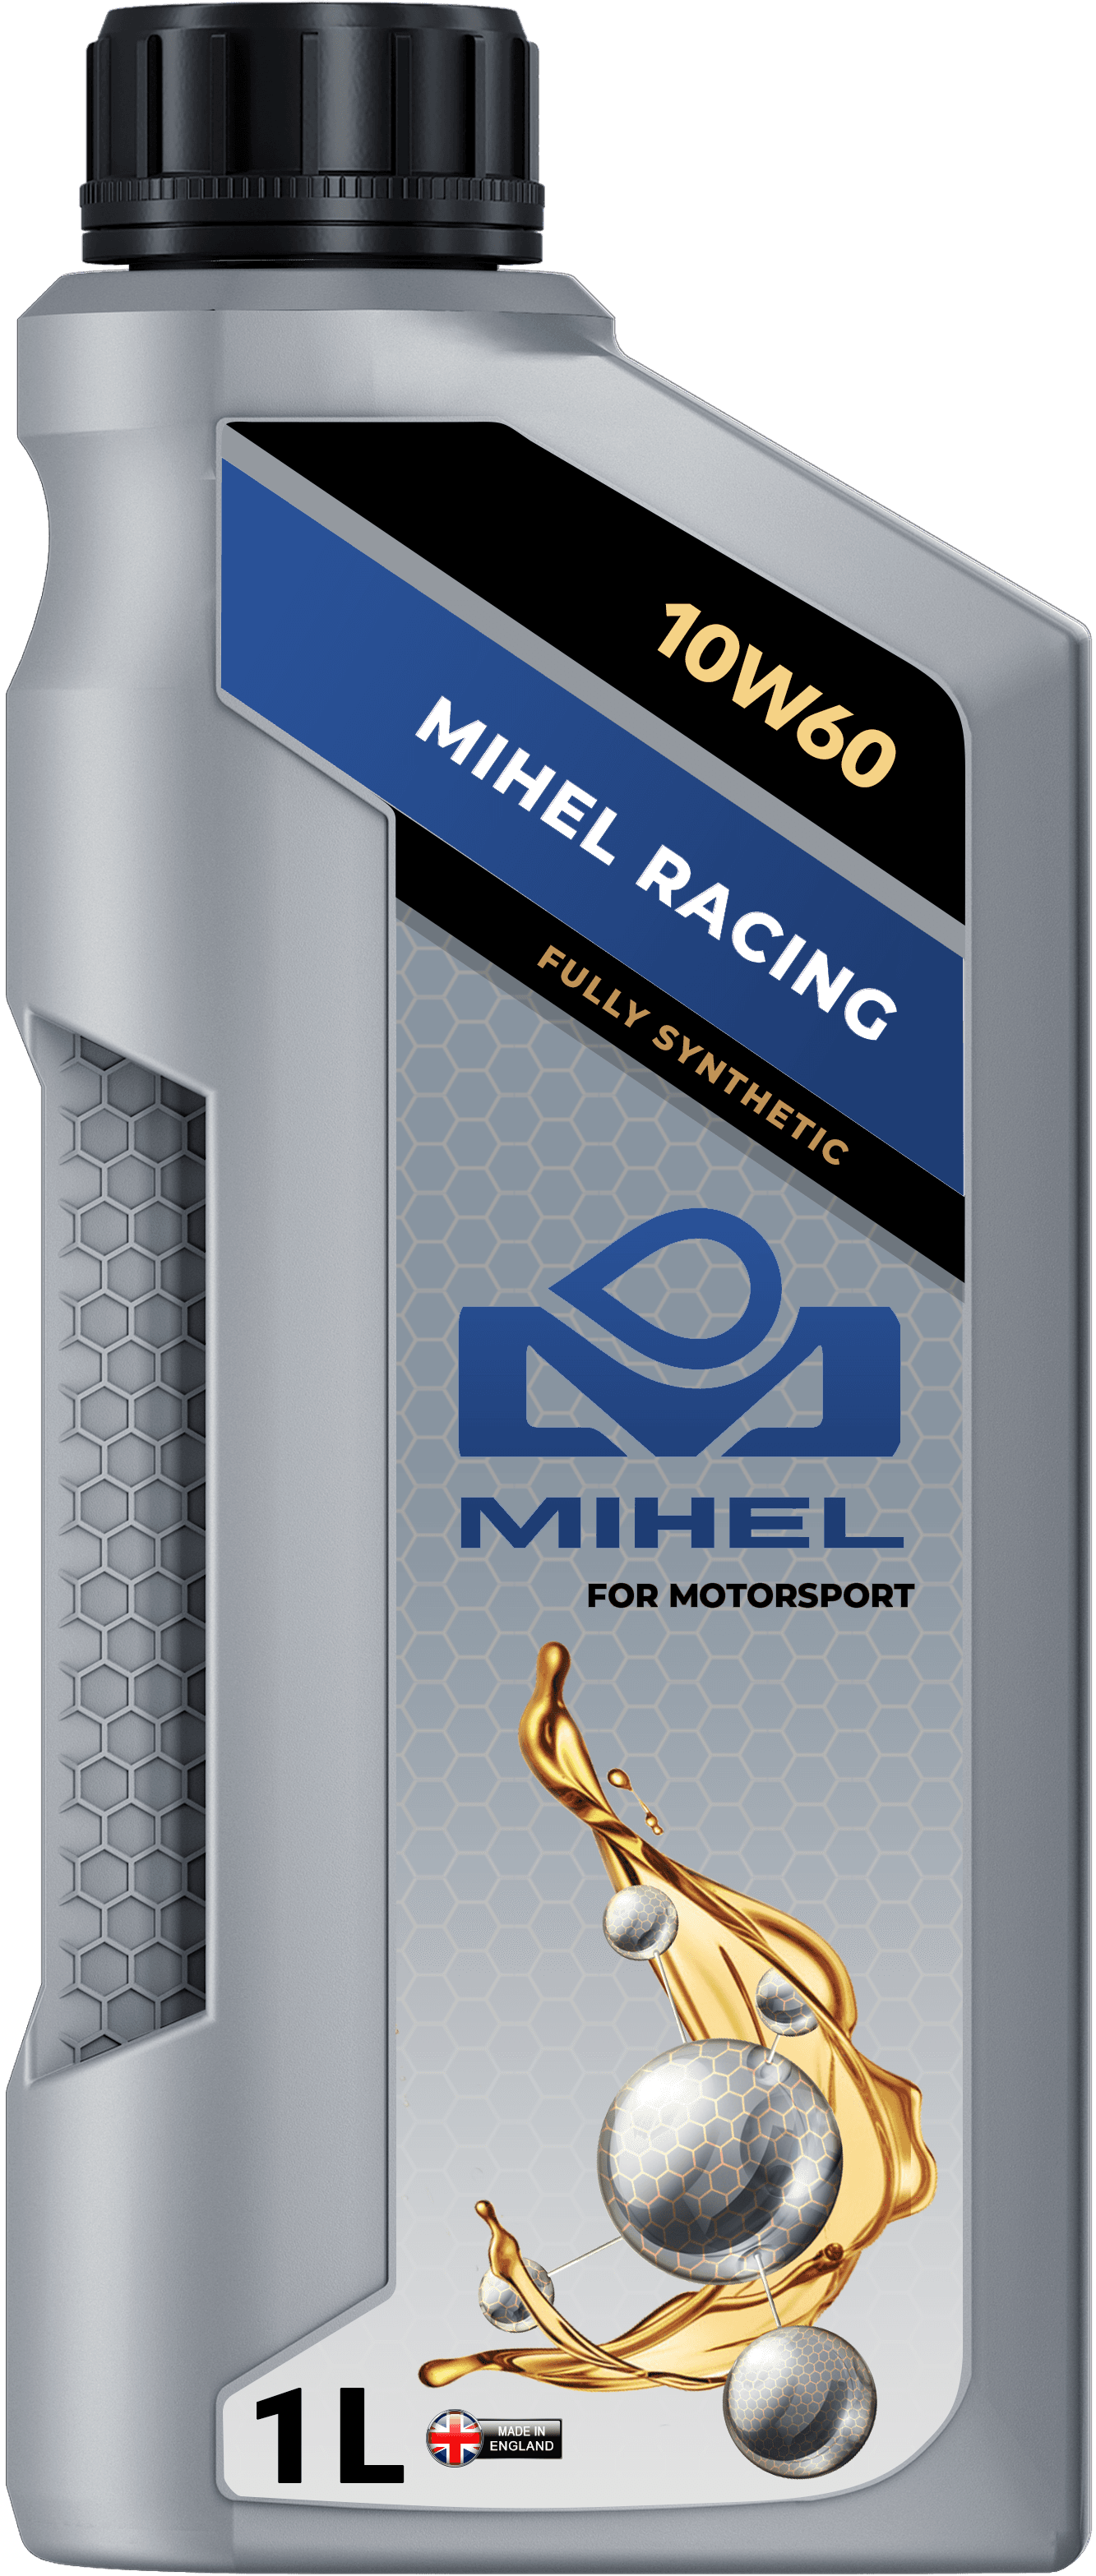 MIHEL Ceramic Oil® Racing 10W60